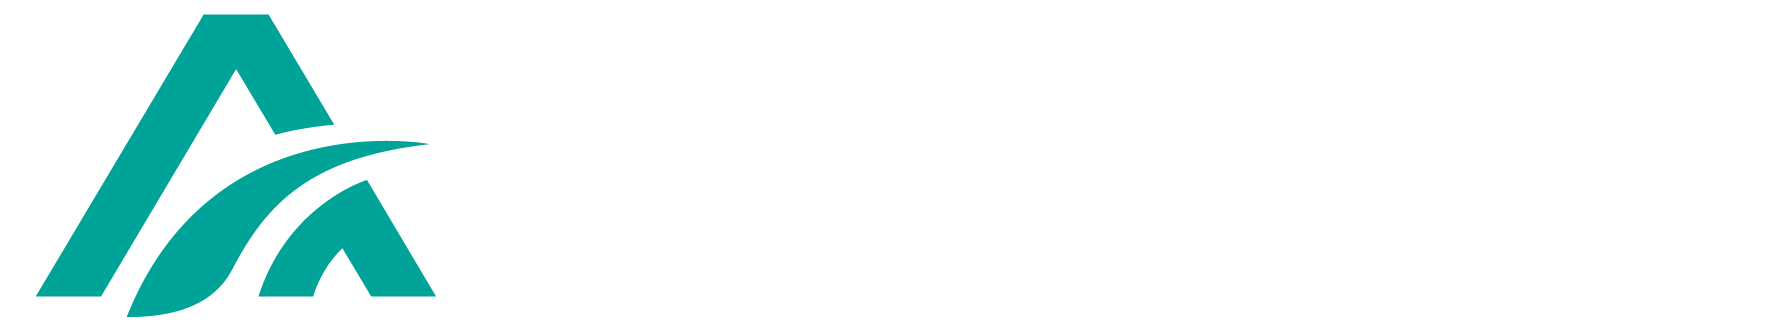 агромаш_лого для бланка белый.png